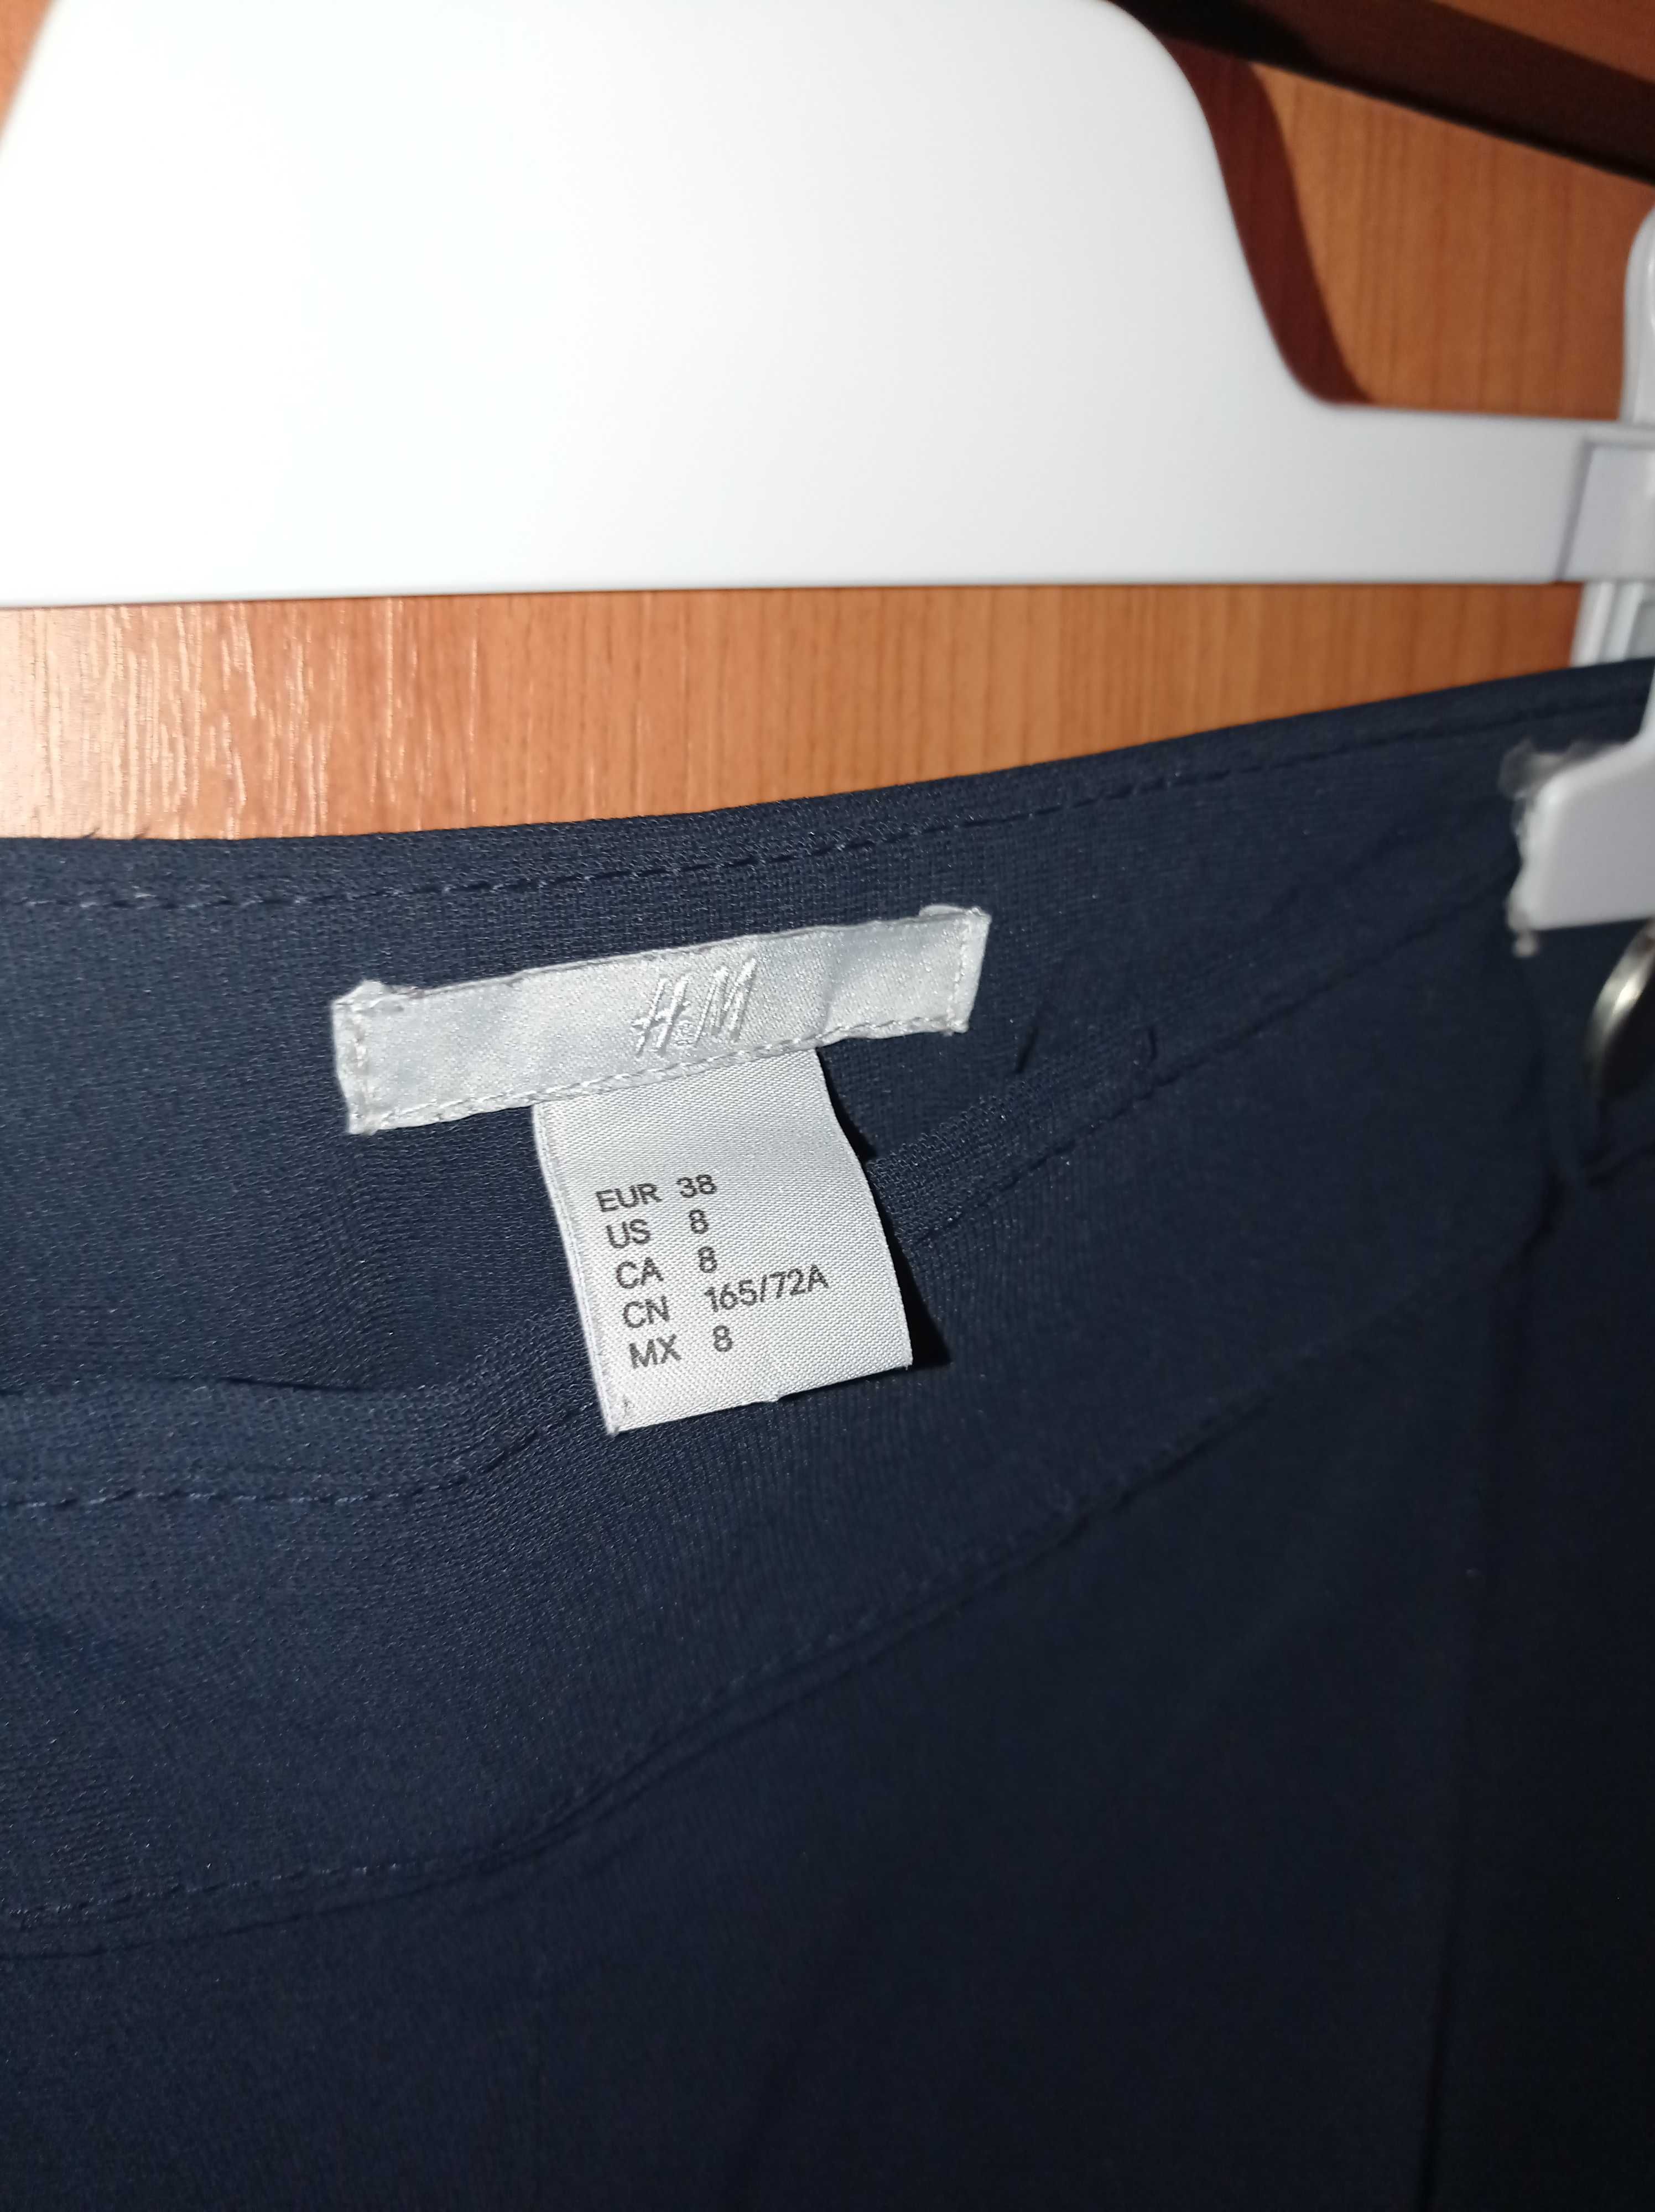 pantaloni H&M eleganti/office mas. M(38)